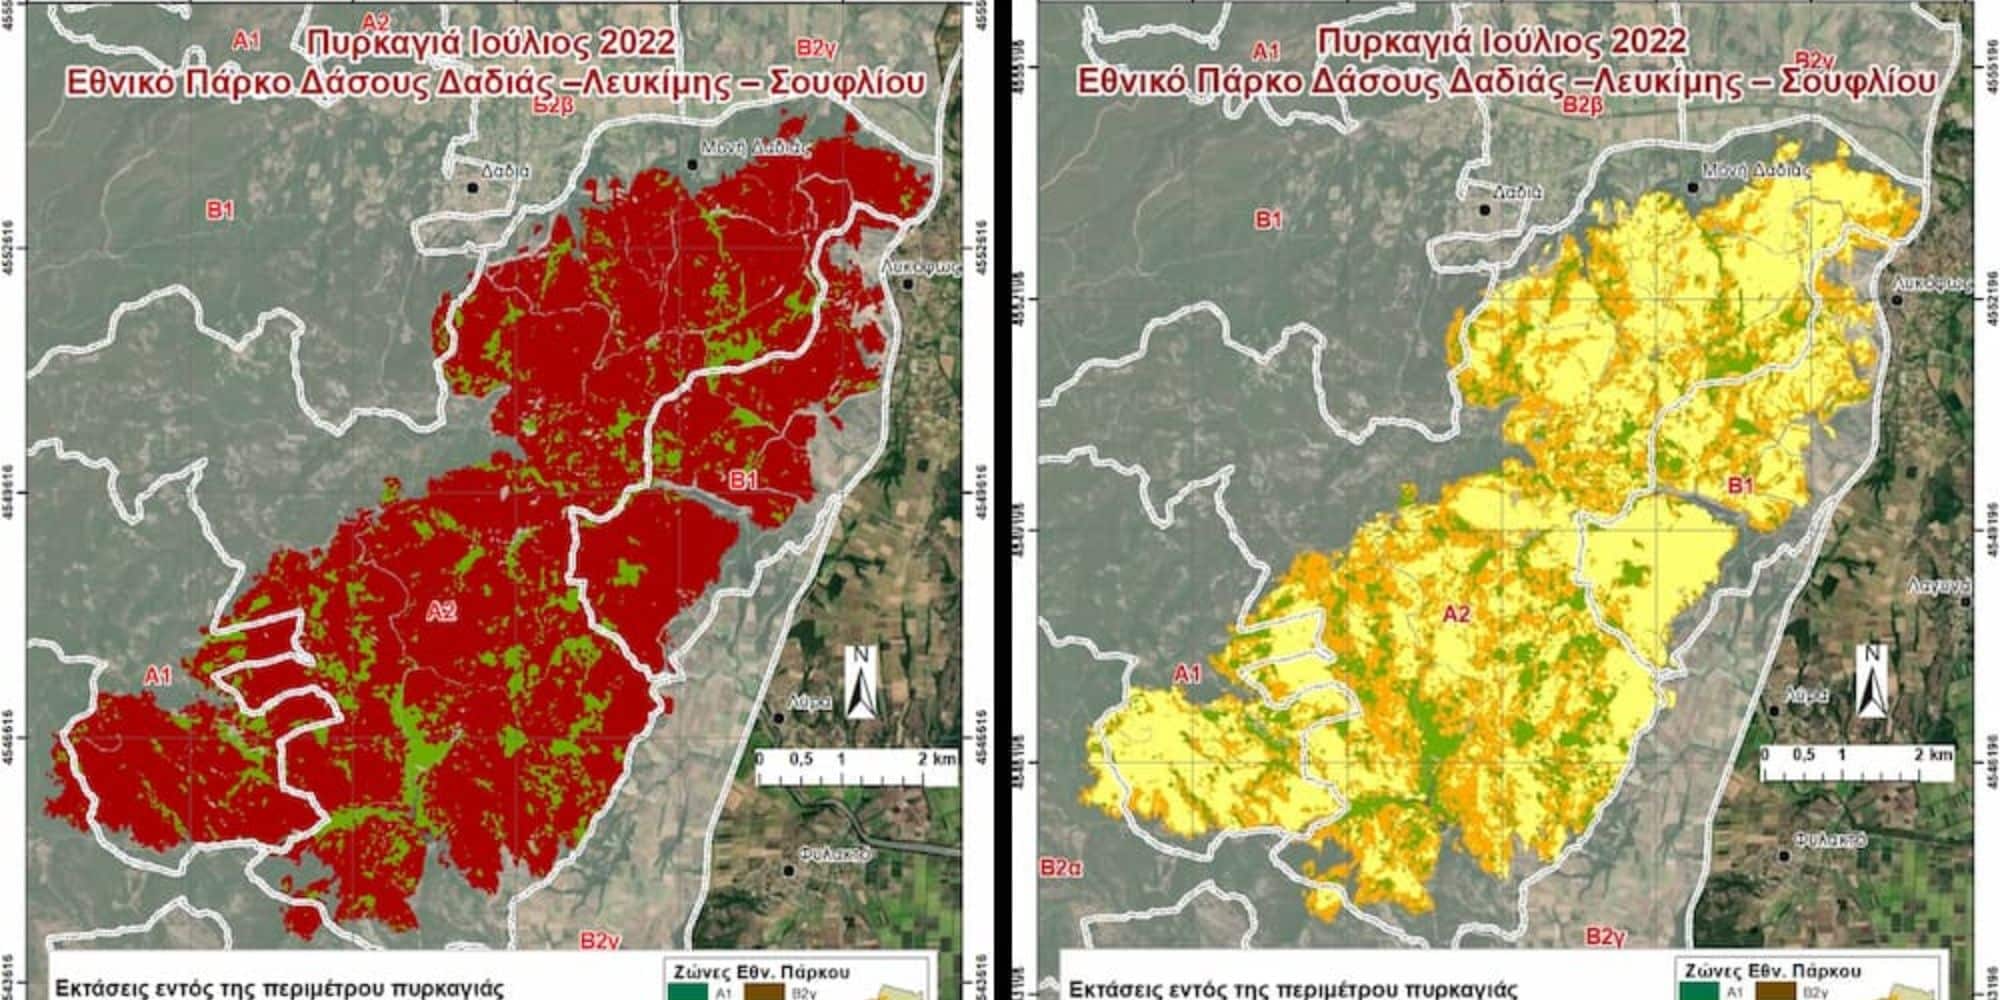 Χάρτες που απεικονίζουν την καταστροφή στο δάσος της Δαδιάς